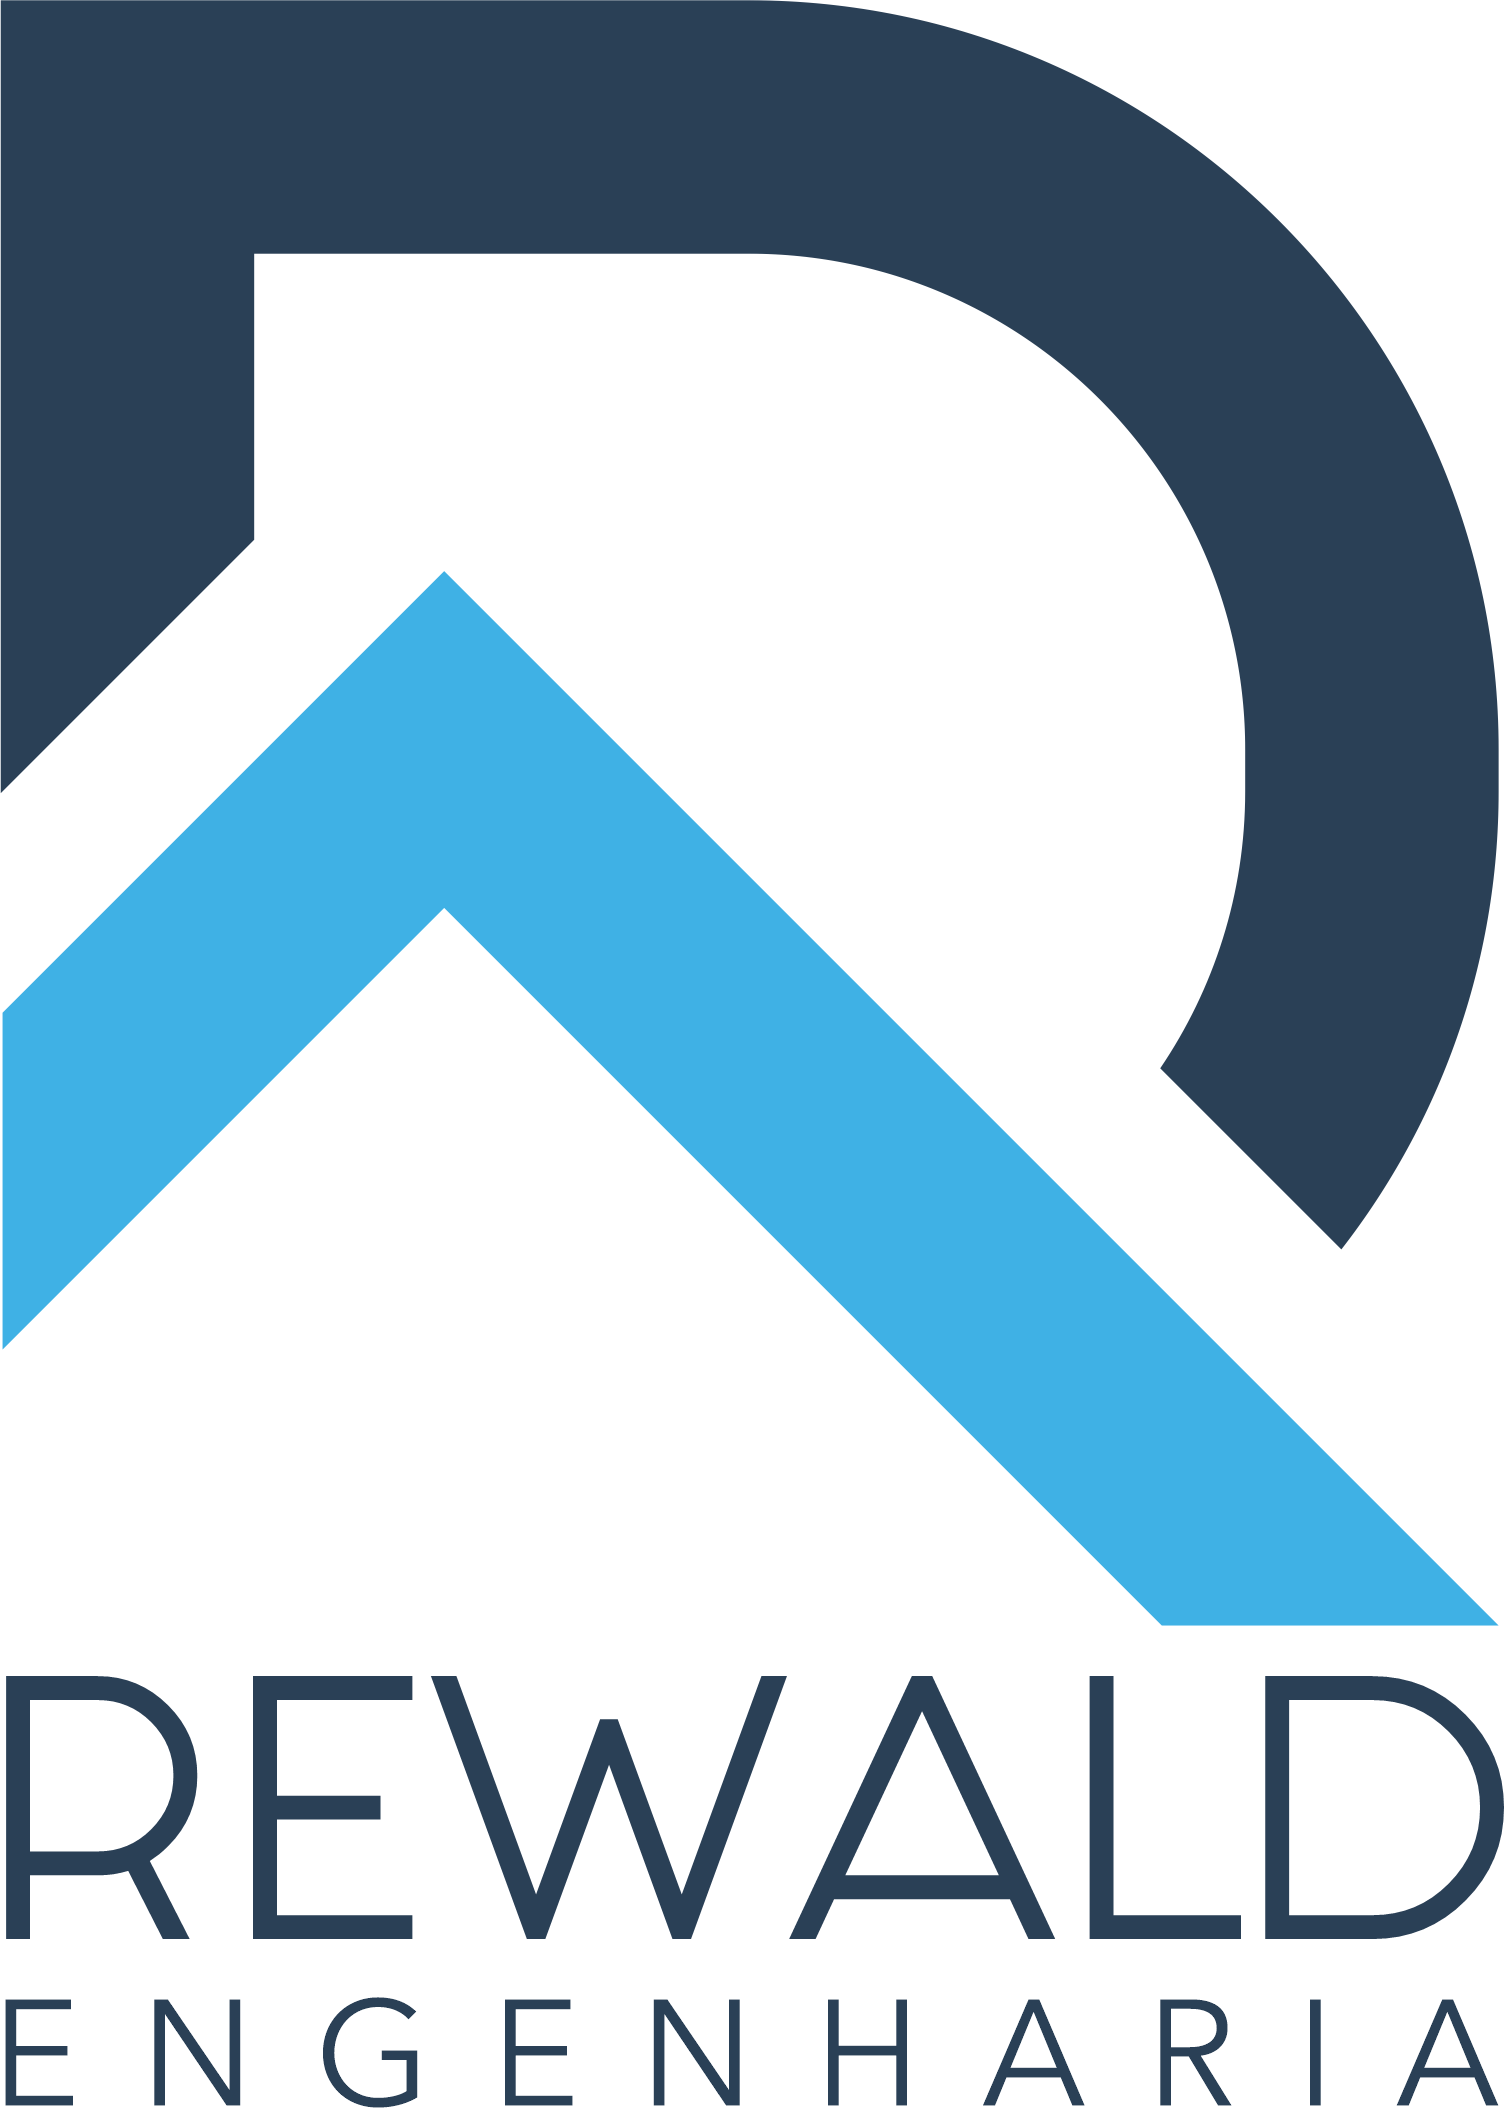 Rewald-Engenharia